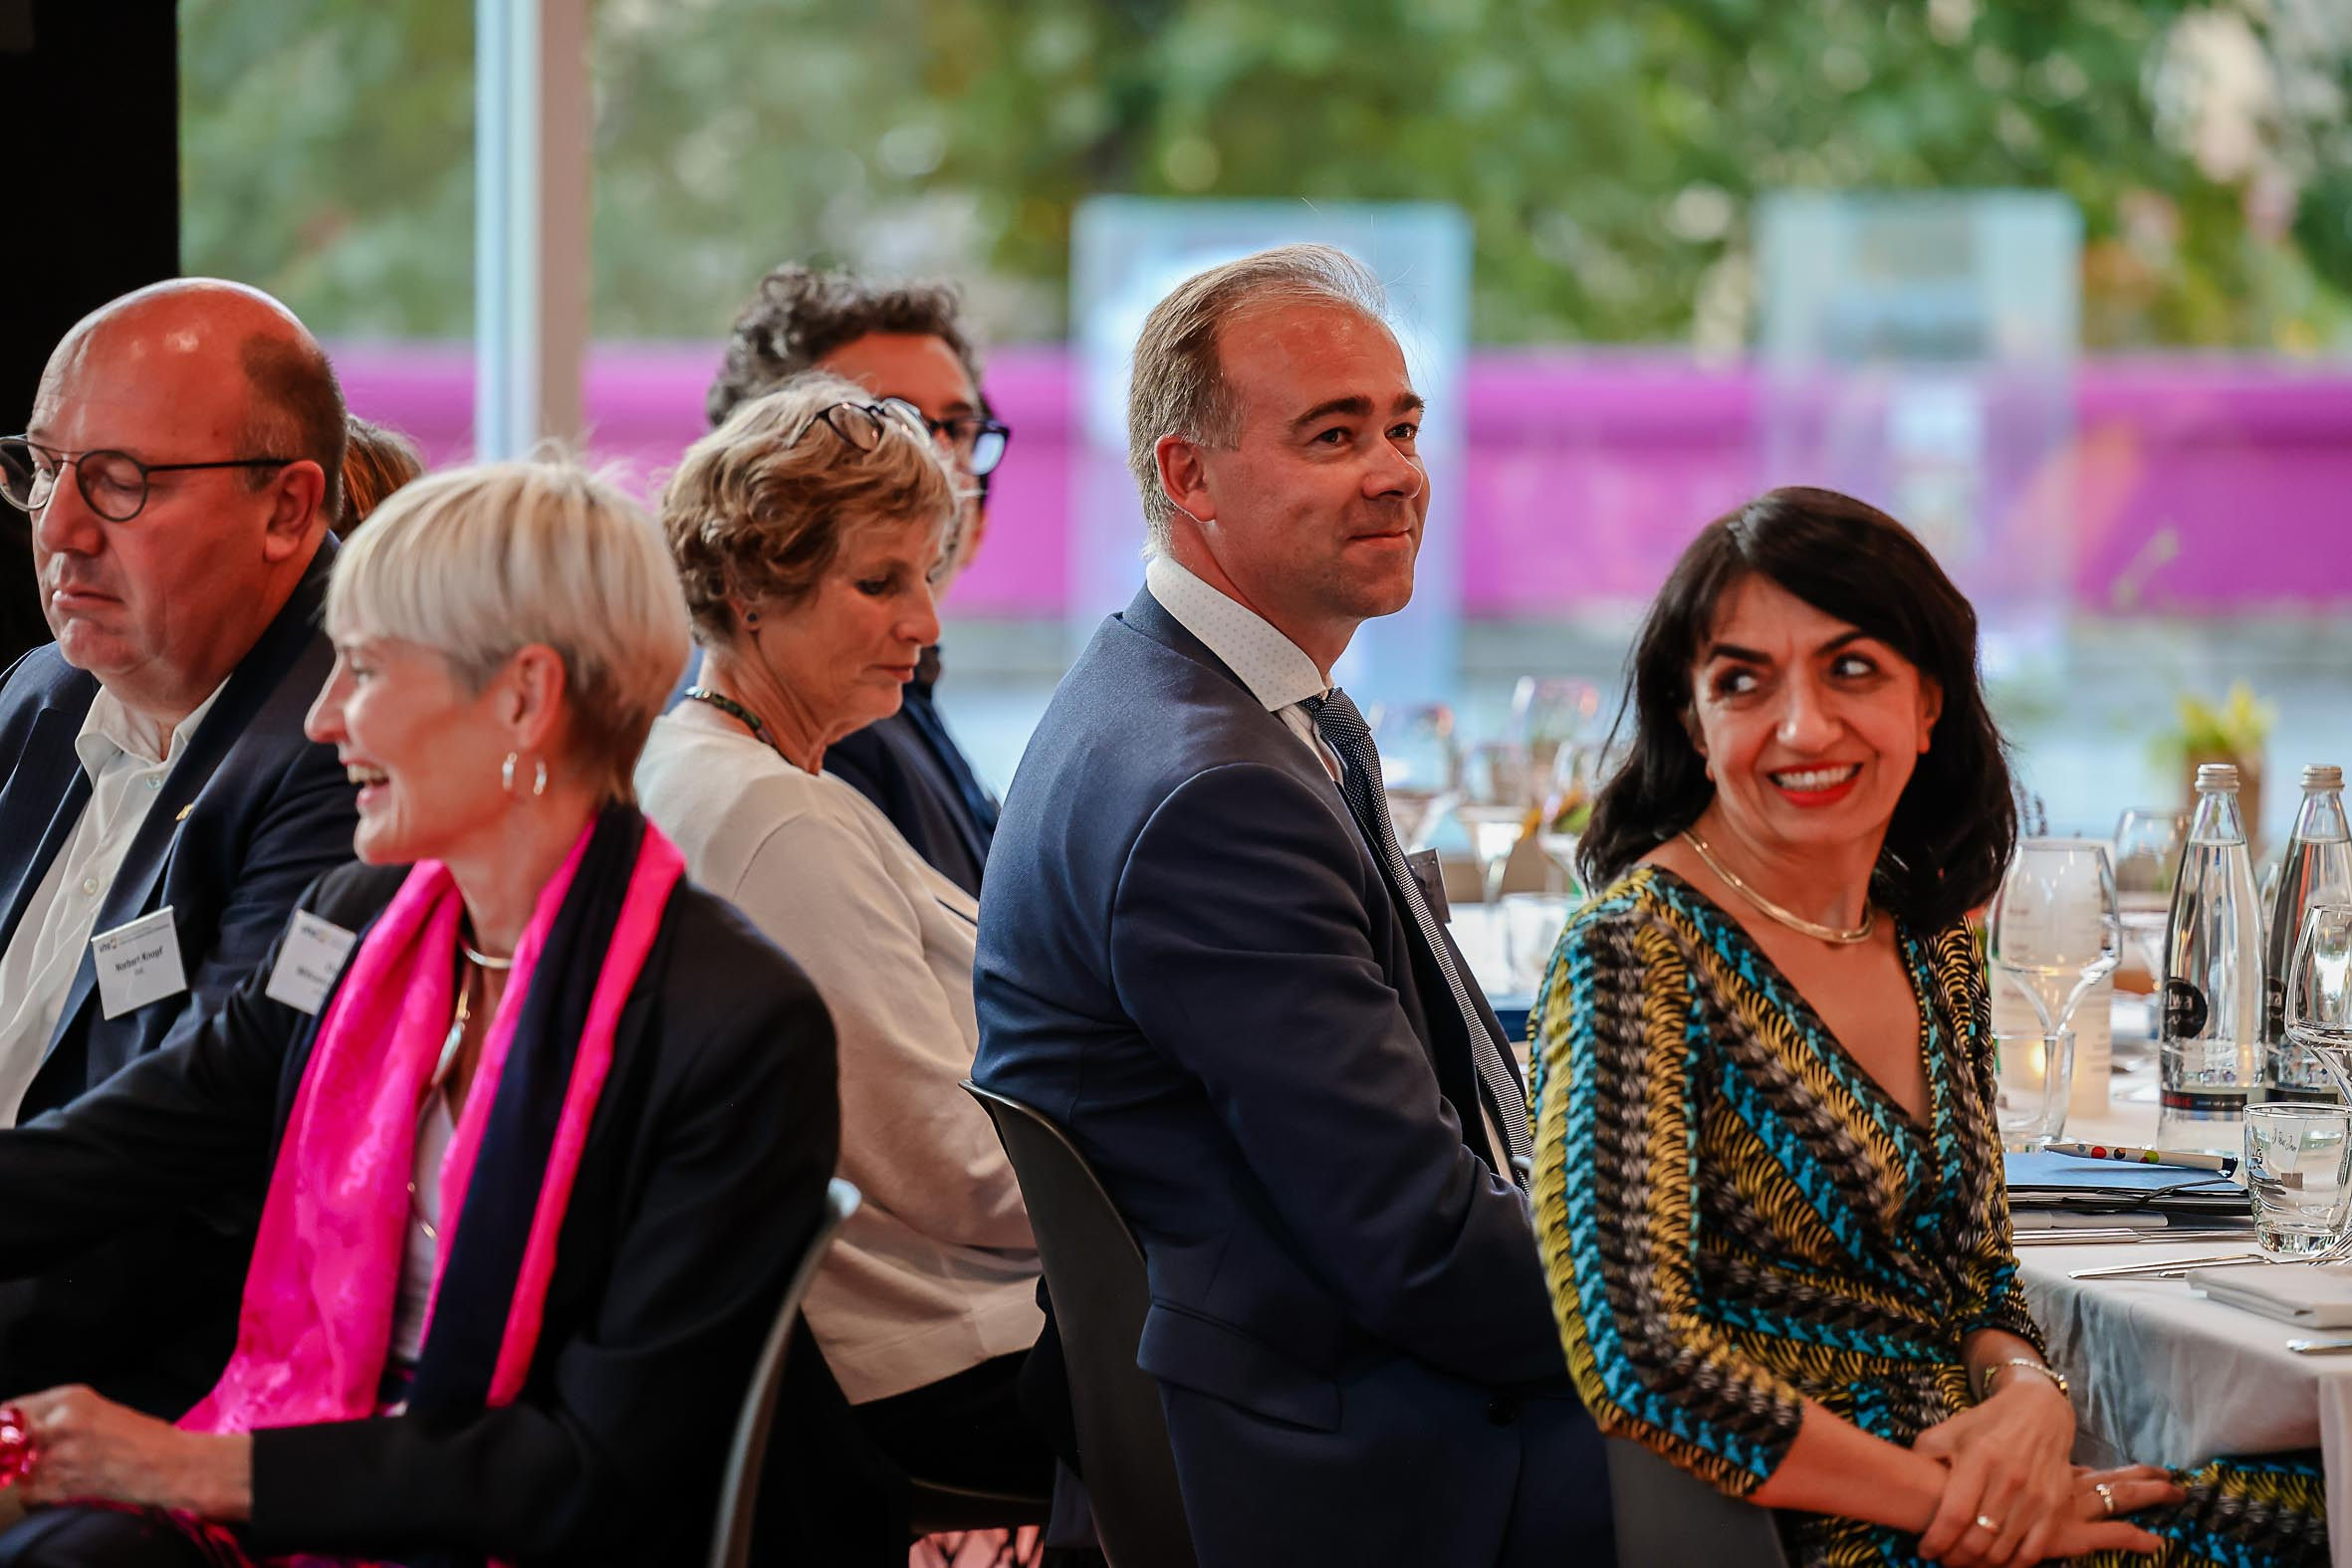 Foto: Landtagspräsidentin Muhterem Aras sowie vhs-Verbandsdirektor Dr. Tobias Diemer beim Parlamentarischen Abend 2022